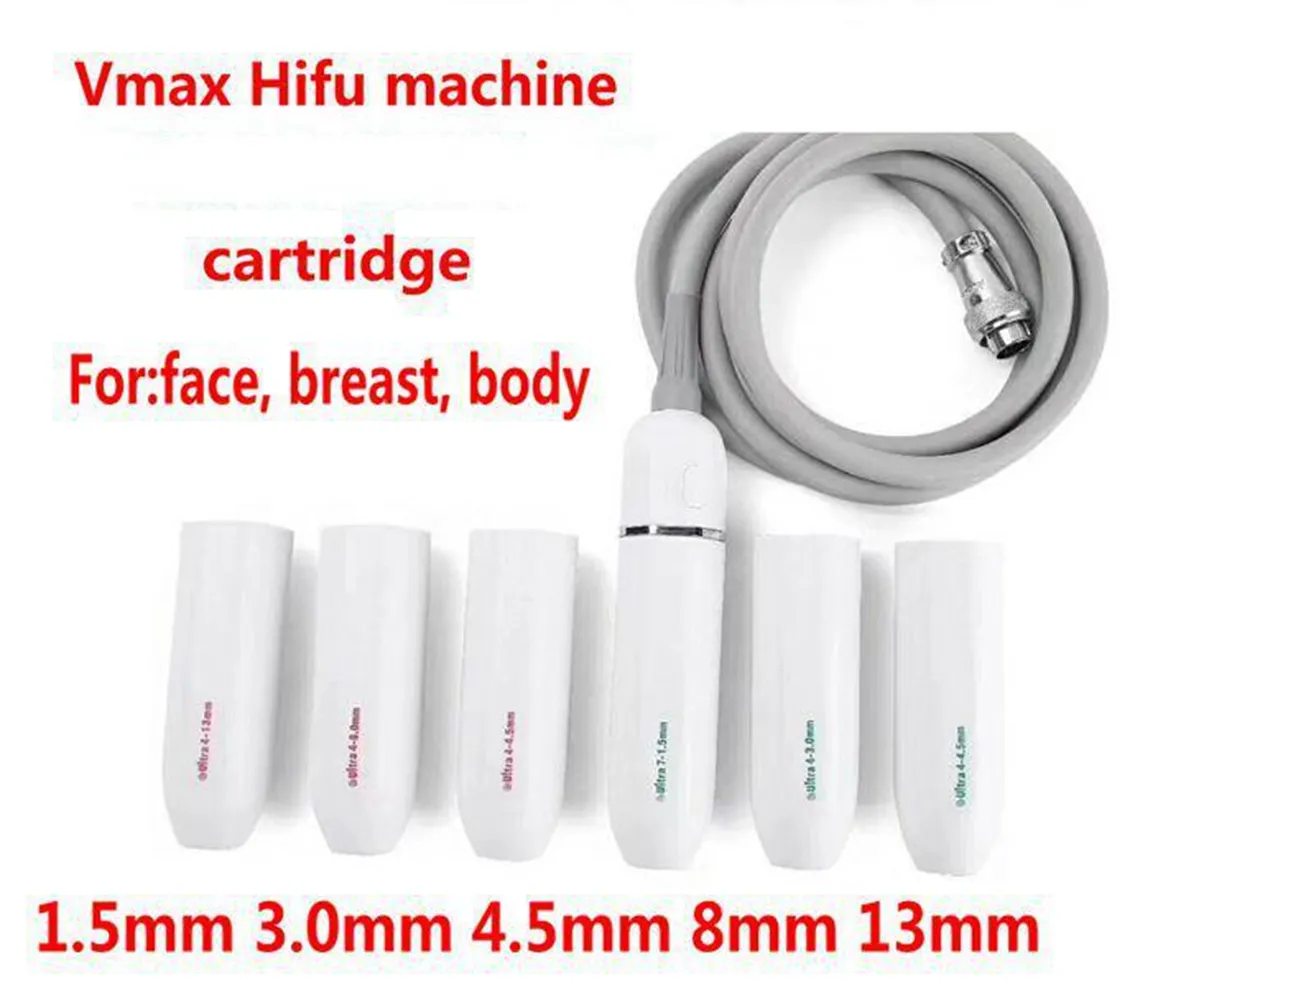 Cartuccia di ricambio Vmax Hifu 1.5/3.0/4.5/8.0/13.0mm per macchina ad ultrasuoni Hifu Vmax, 38000 scatti